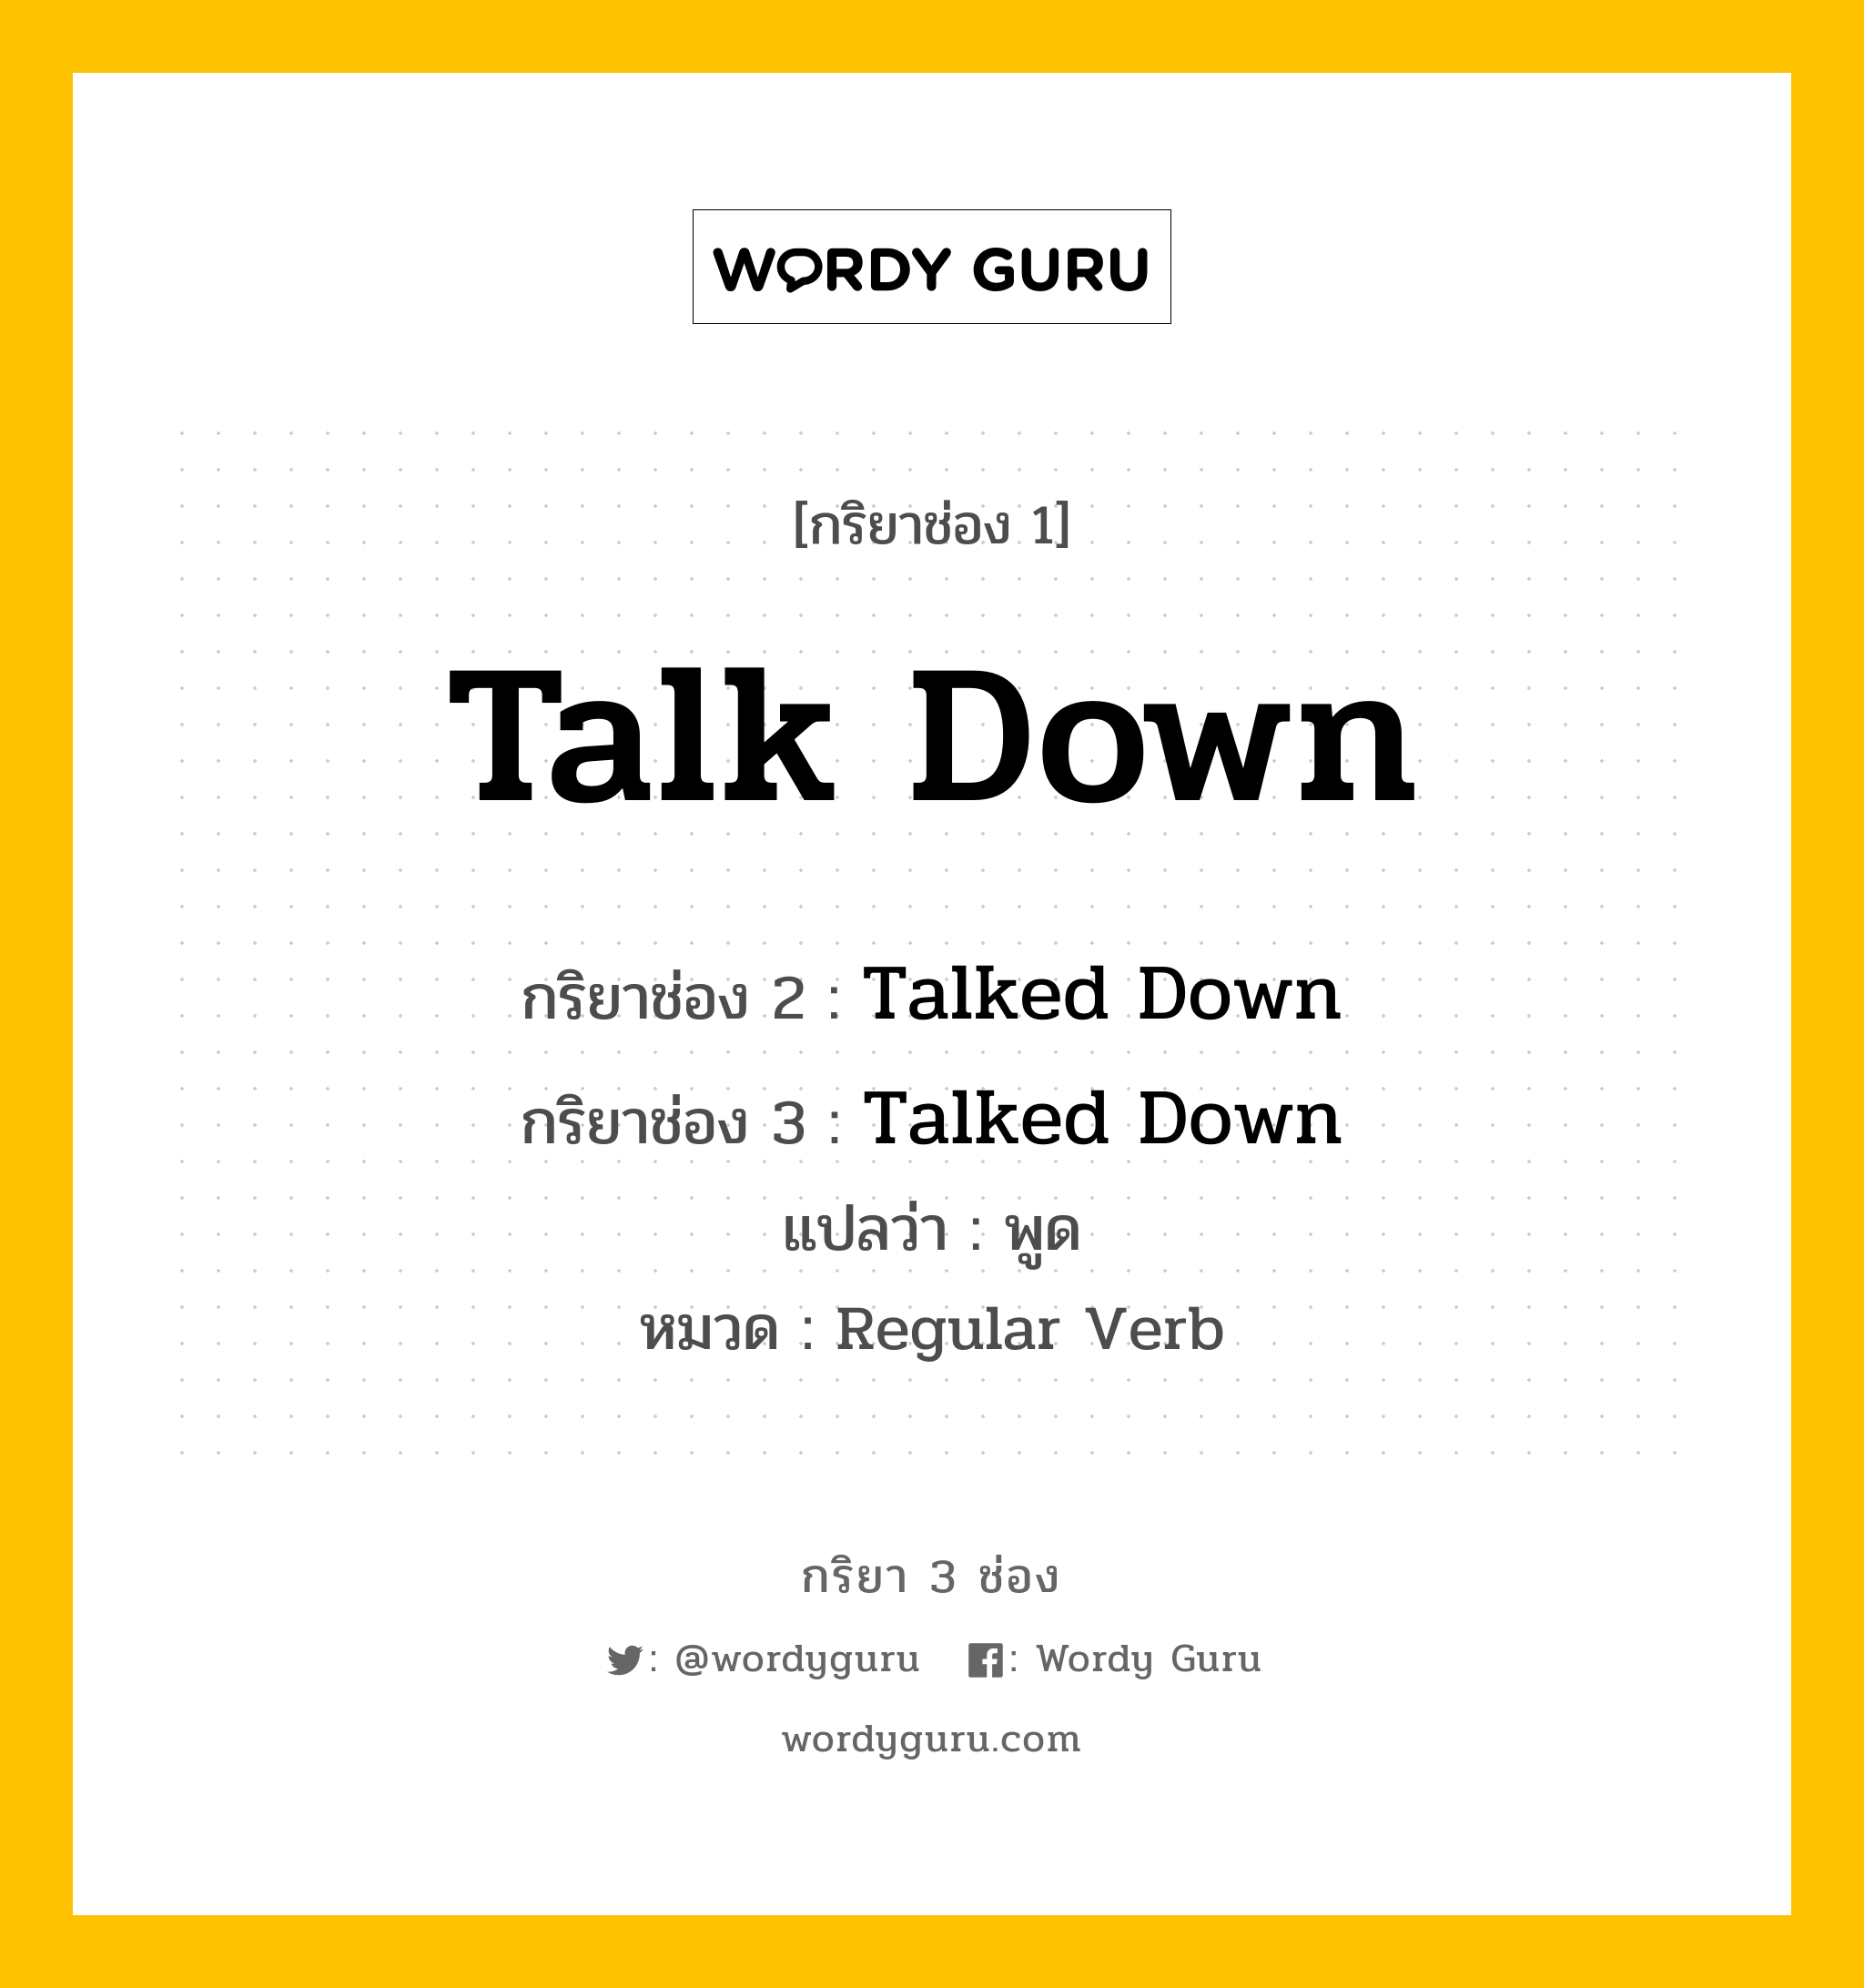 กริยา 3 ช่อง ของ Talk Down คืออะไร? มาดูคำอ่าน คำแปลกันเลย, กริยาช่อง 1 Talk Down กริยาช่อง 2 Talked Down กริยาช่อง 3 Talked Down แปลว่า พูด หมวด Regular Verb หมวด Regular Verb